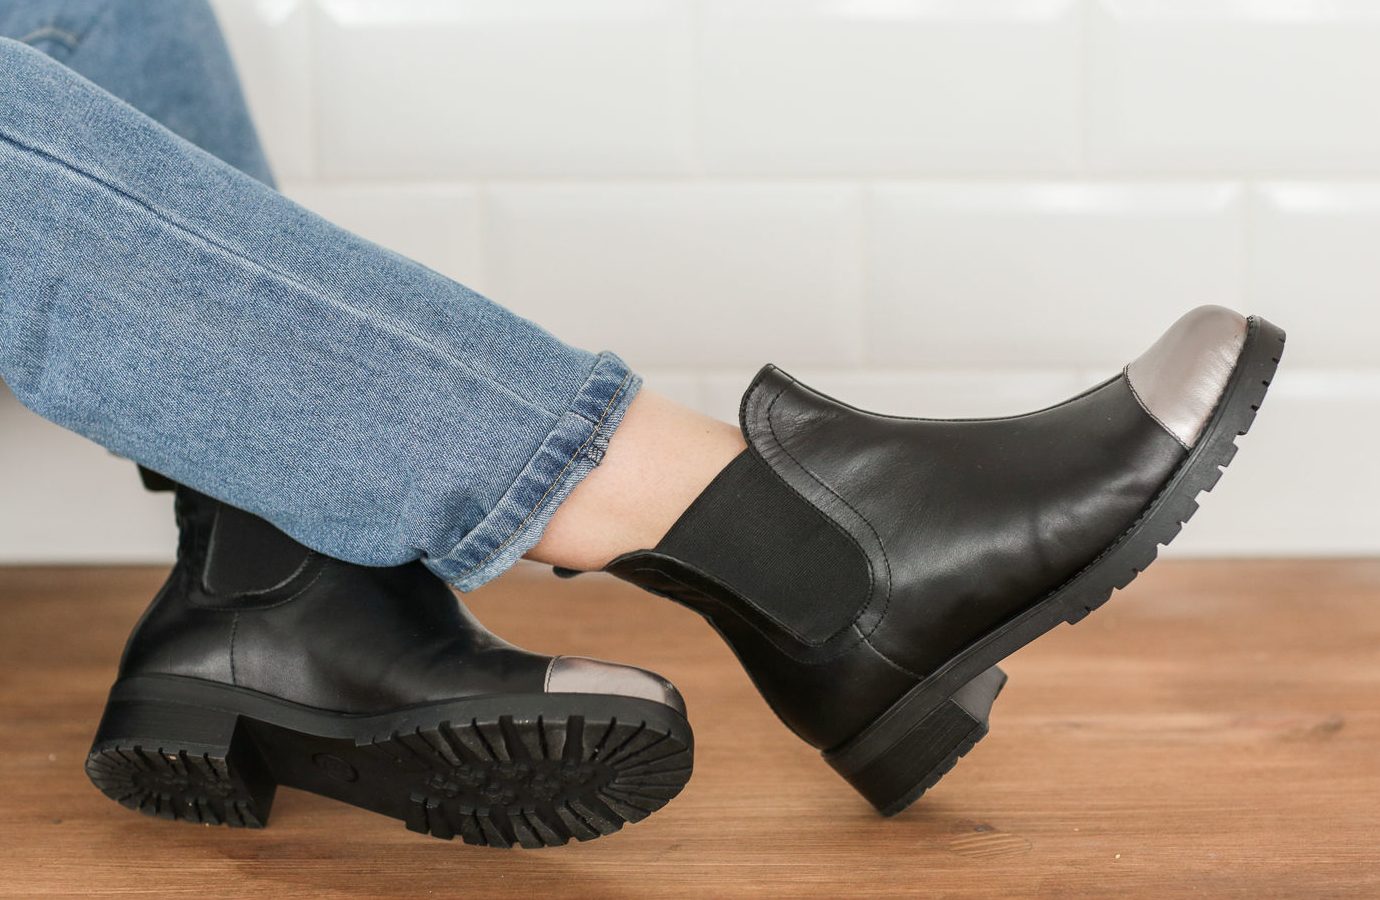 Ботинки с резинками по бокам как называются: Как называются ботинки с резинками по бокам? С чем комбинировать ботинки челси? Какие аксессуары подходят? Образы с челси